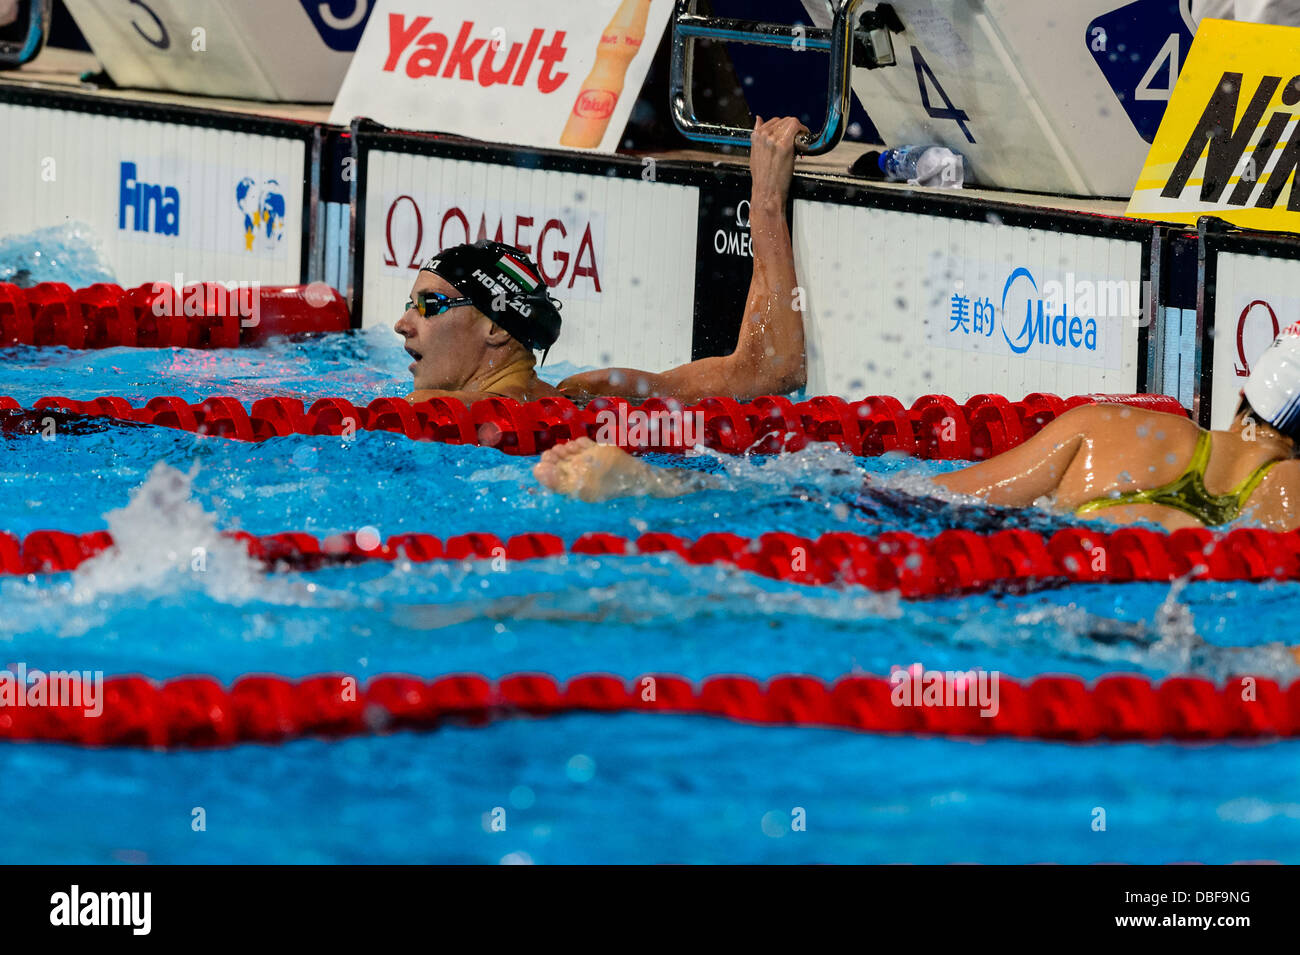 Barcelone, Espagne. 29 Juillet 2013 : la Hongrie's Katinka Hosszu vérifie le résultat de sélection après le 200 m quatre nages à la 15e finale des Championnats du Monde FINA à Barcelone. Credit : matthi/Alamy Live News Banque D'Images